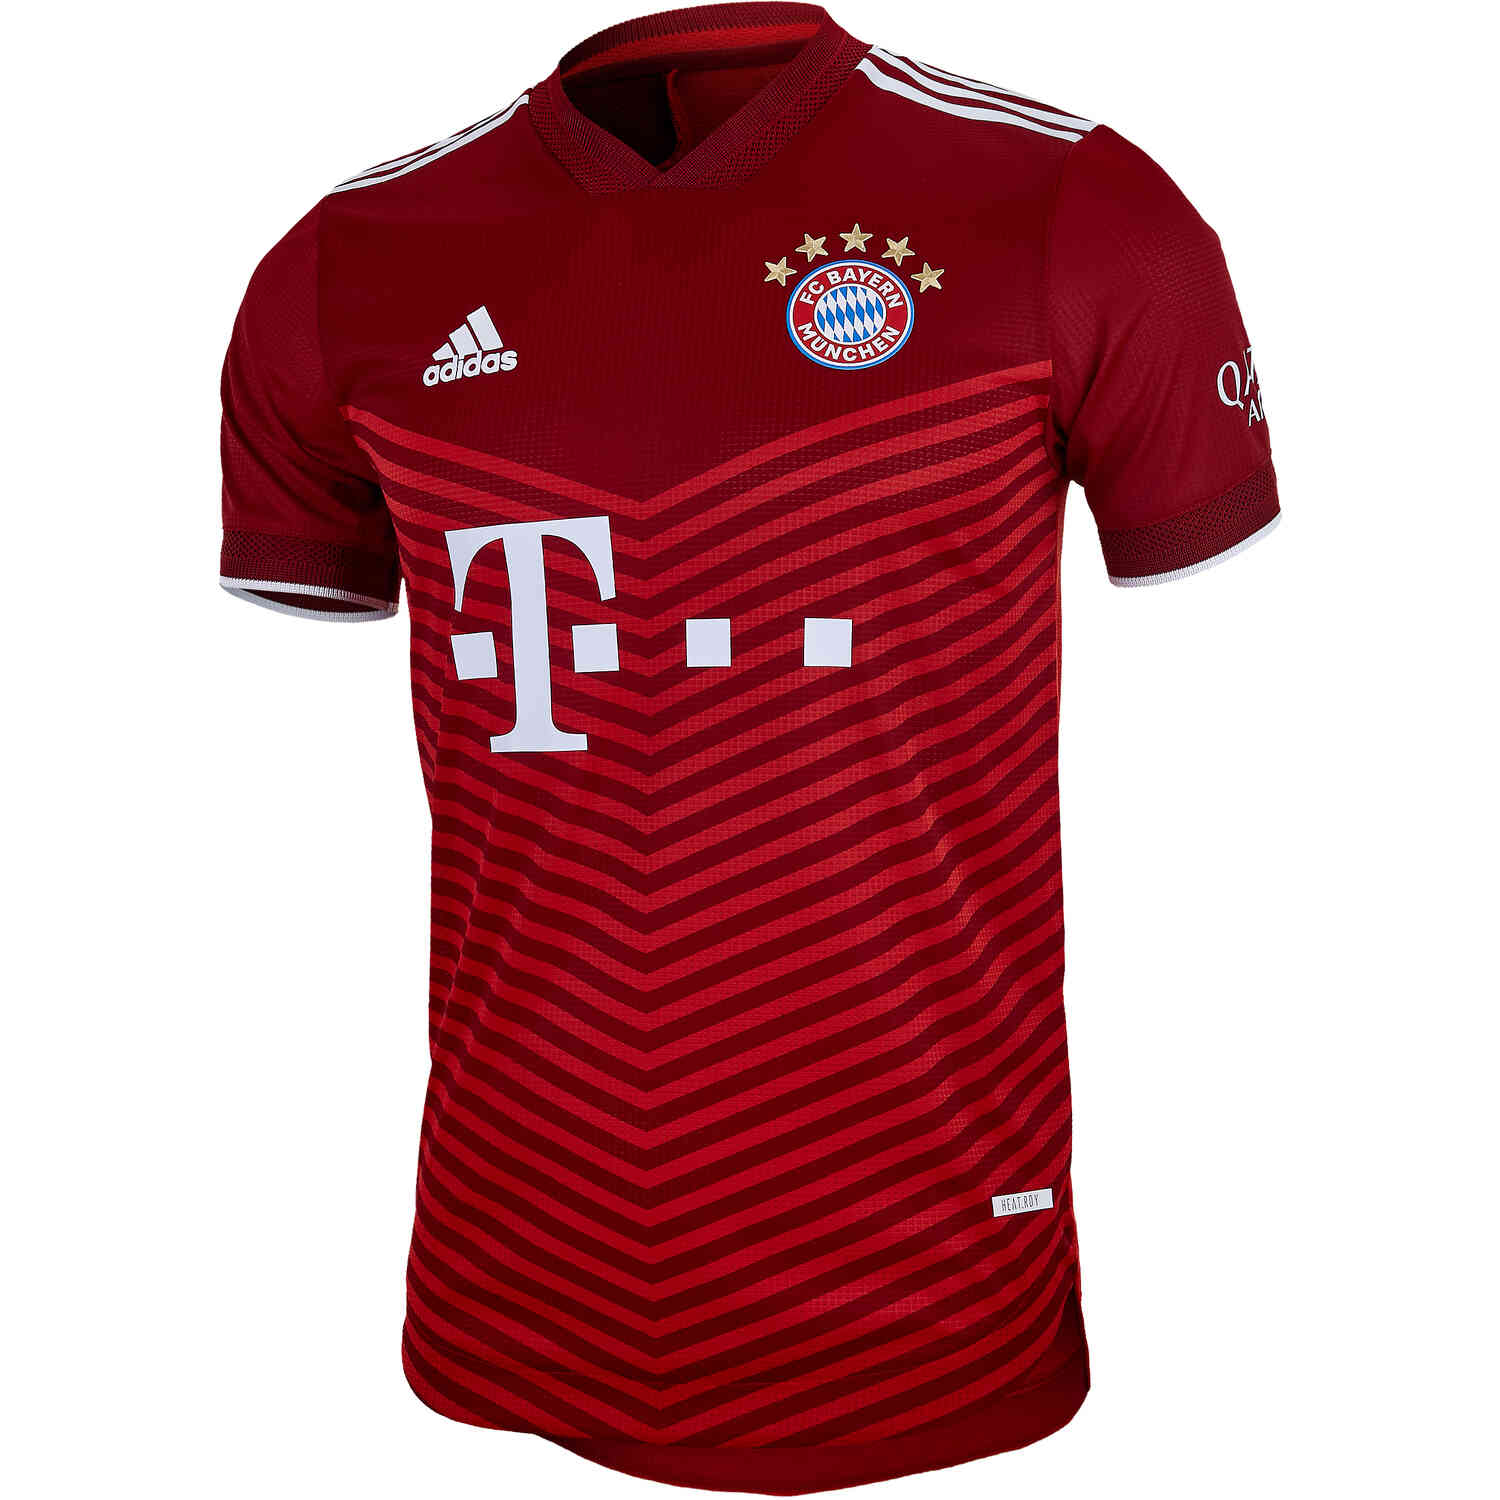 2021/22 adidas Bayern Munich Home Authentic Jersey - SoccerPro